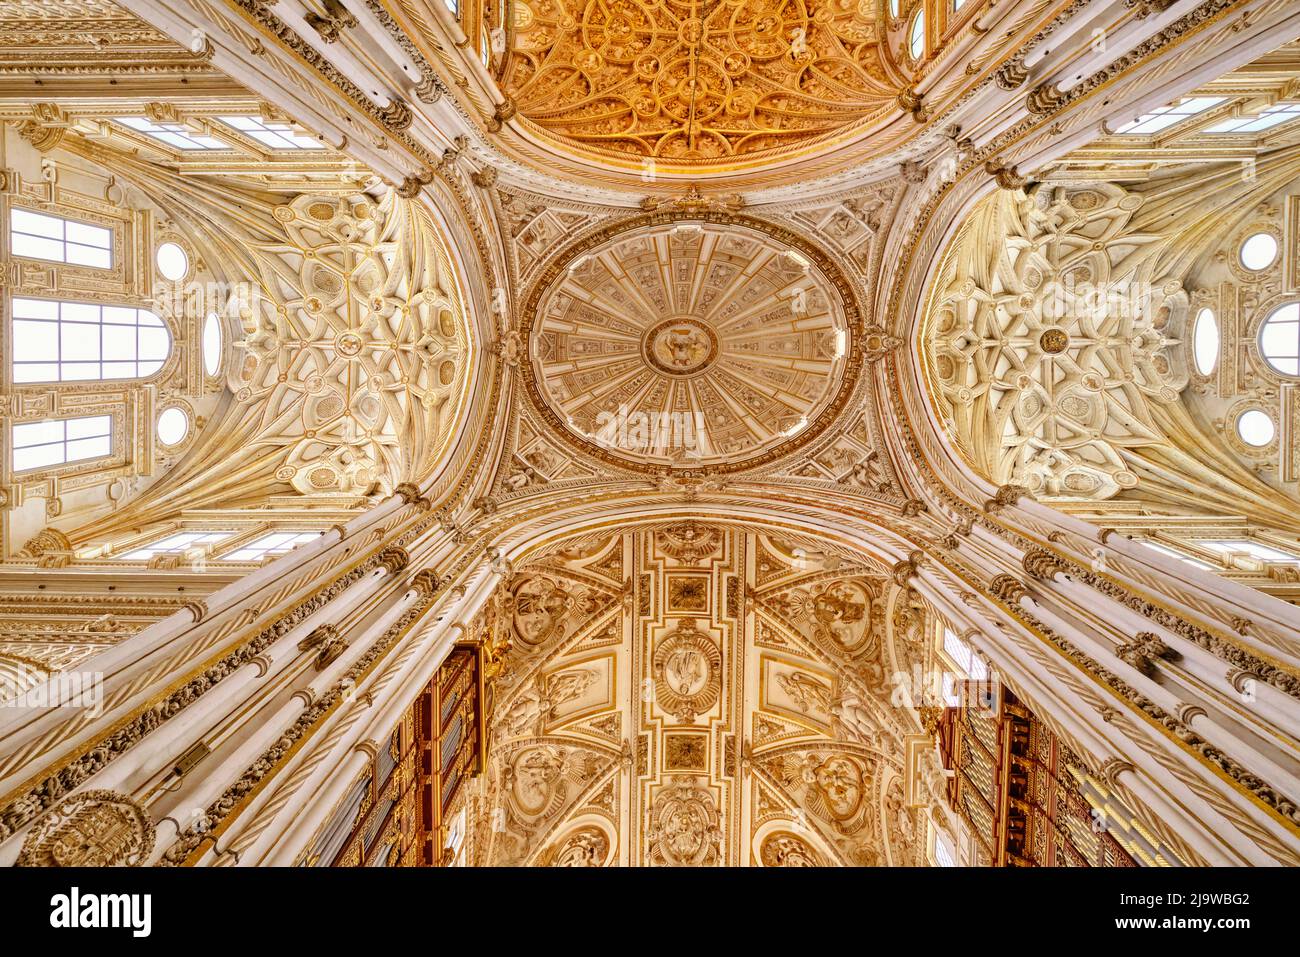 Intérieur de la Mezquita-Catedral (Mosquée-cathédrale) de Cordoue, site classé au patrimoine mondial de l'UNESCO. Andalousie, Espagne Banque D'Images